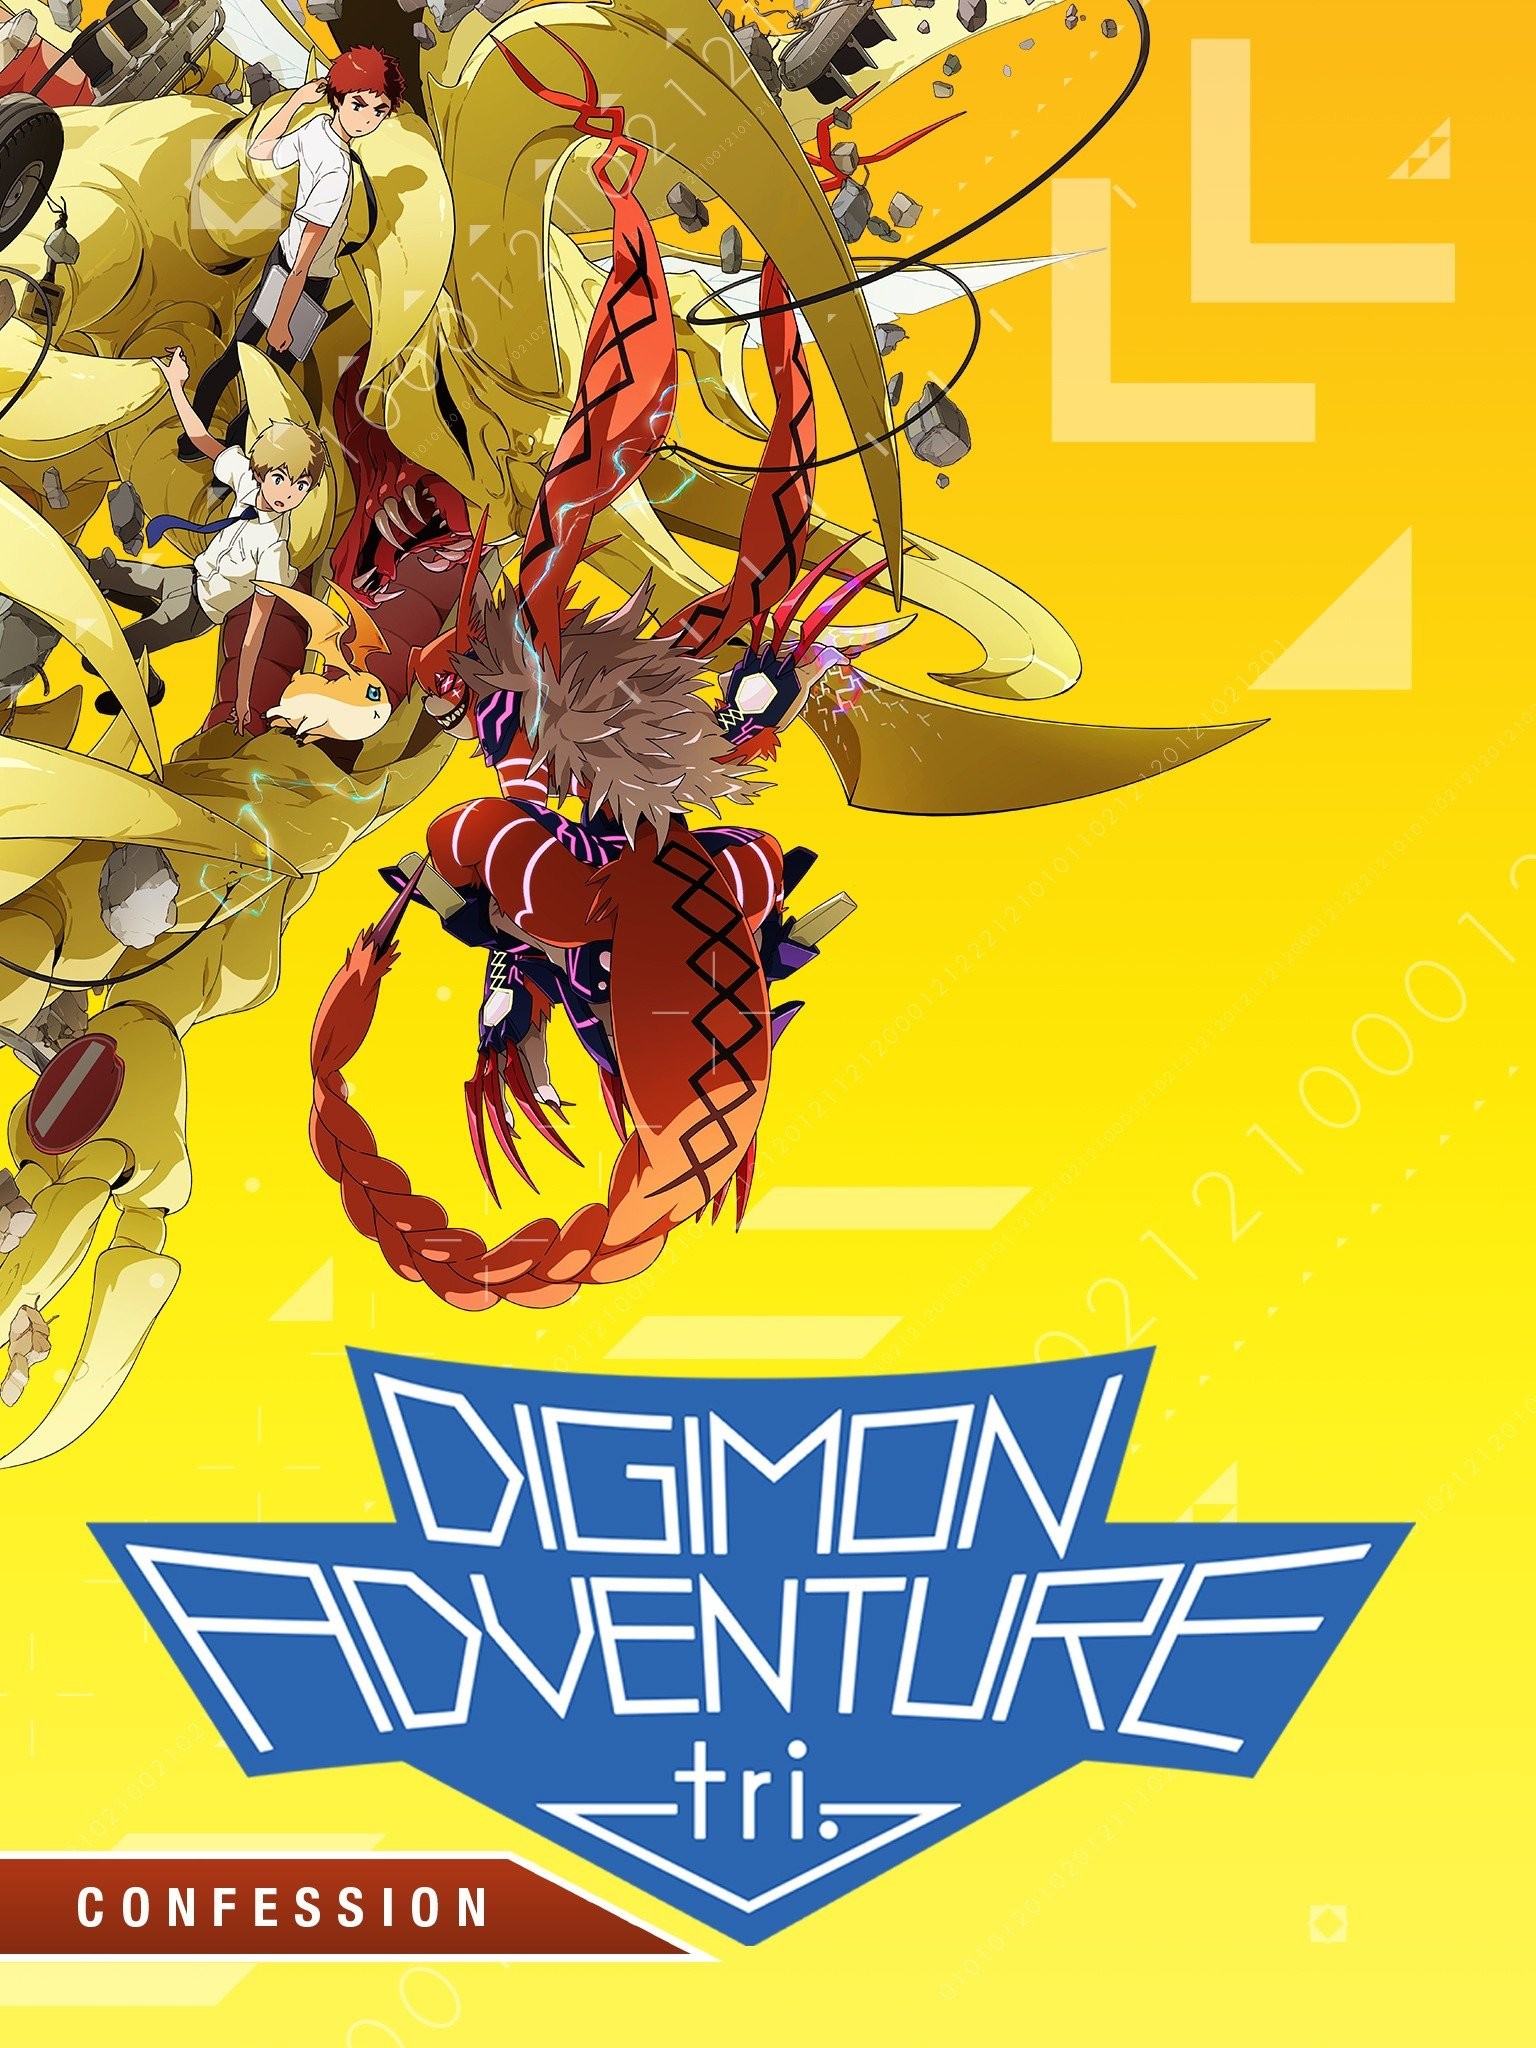 Digimon, Digimon adventure tri, Digimon adventure